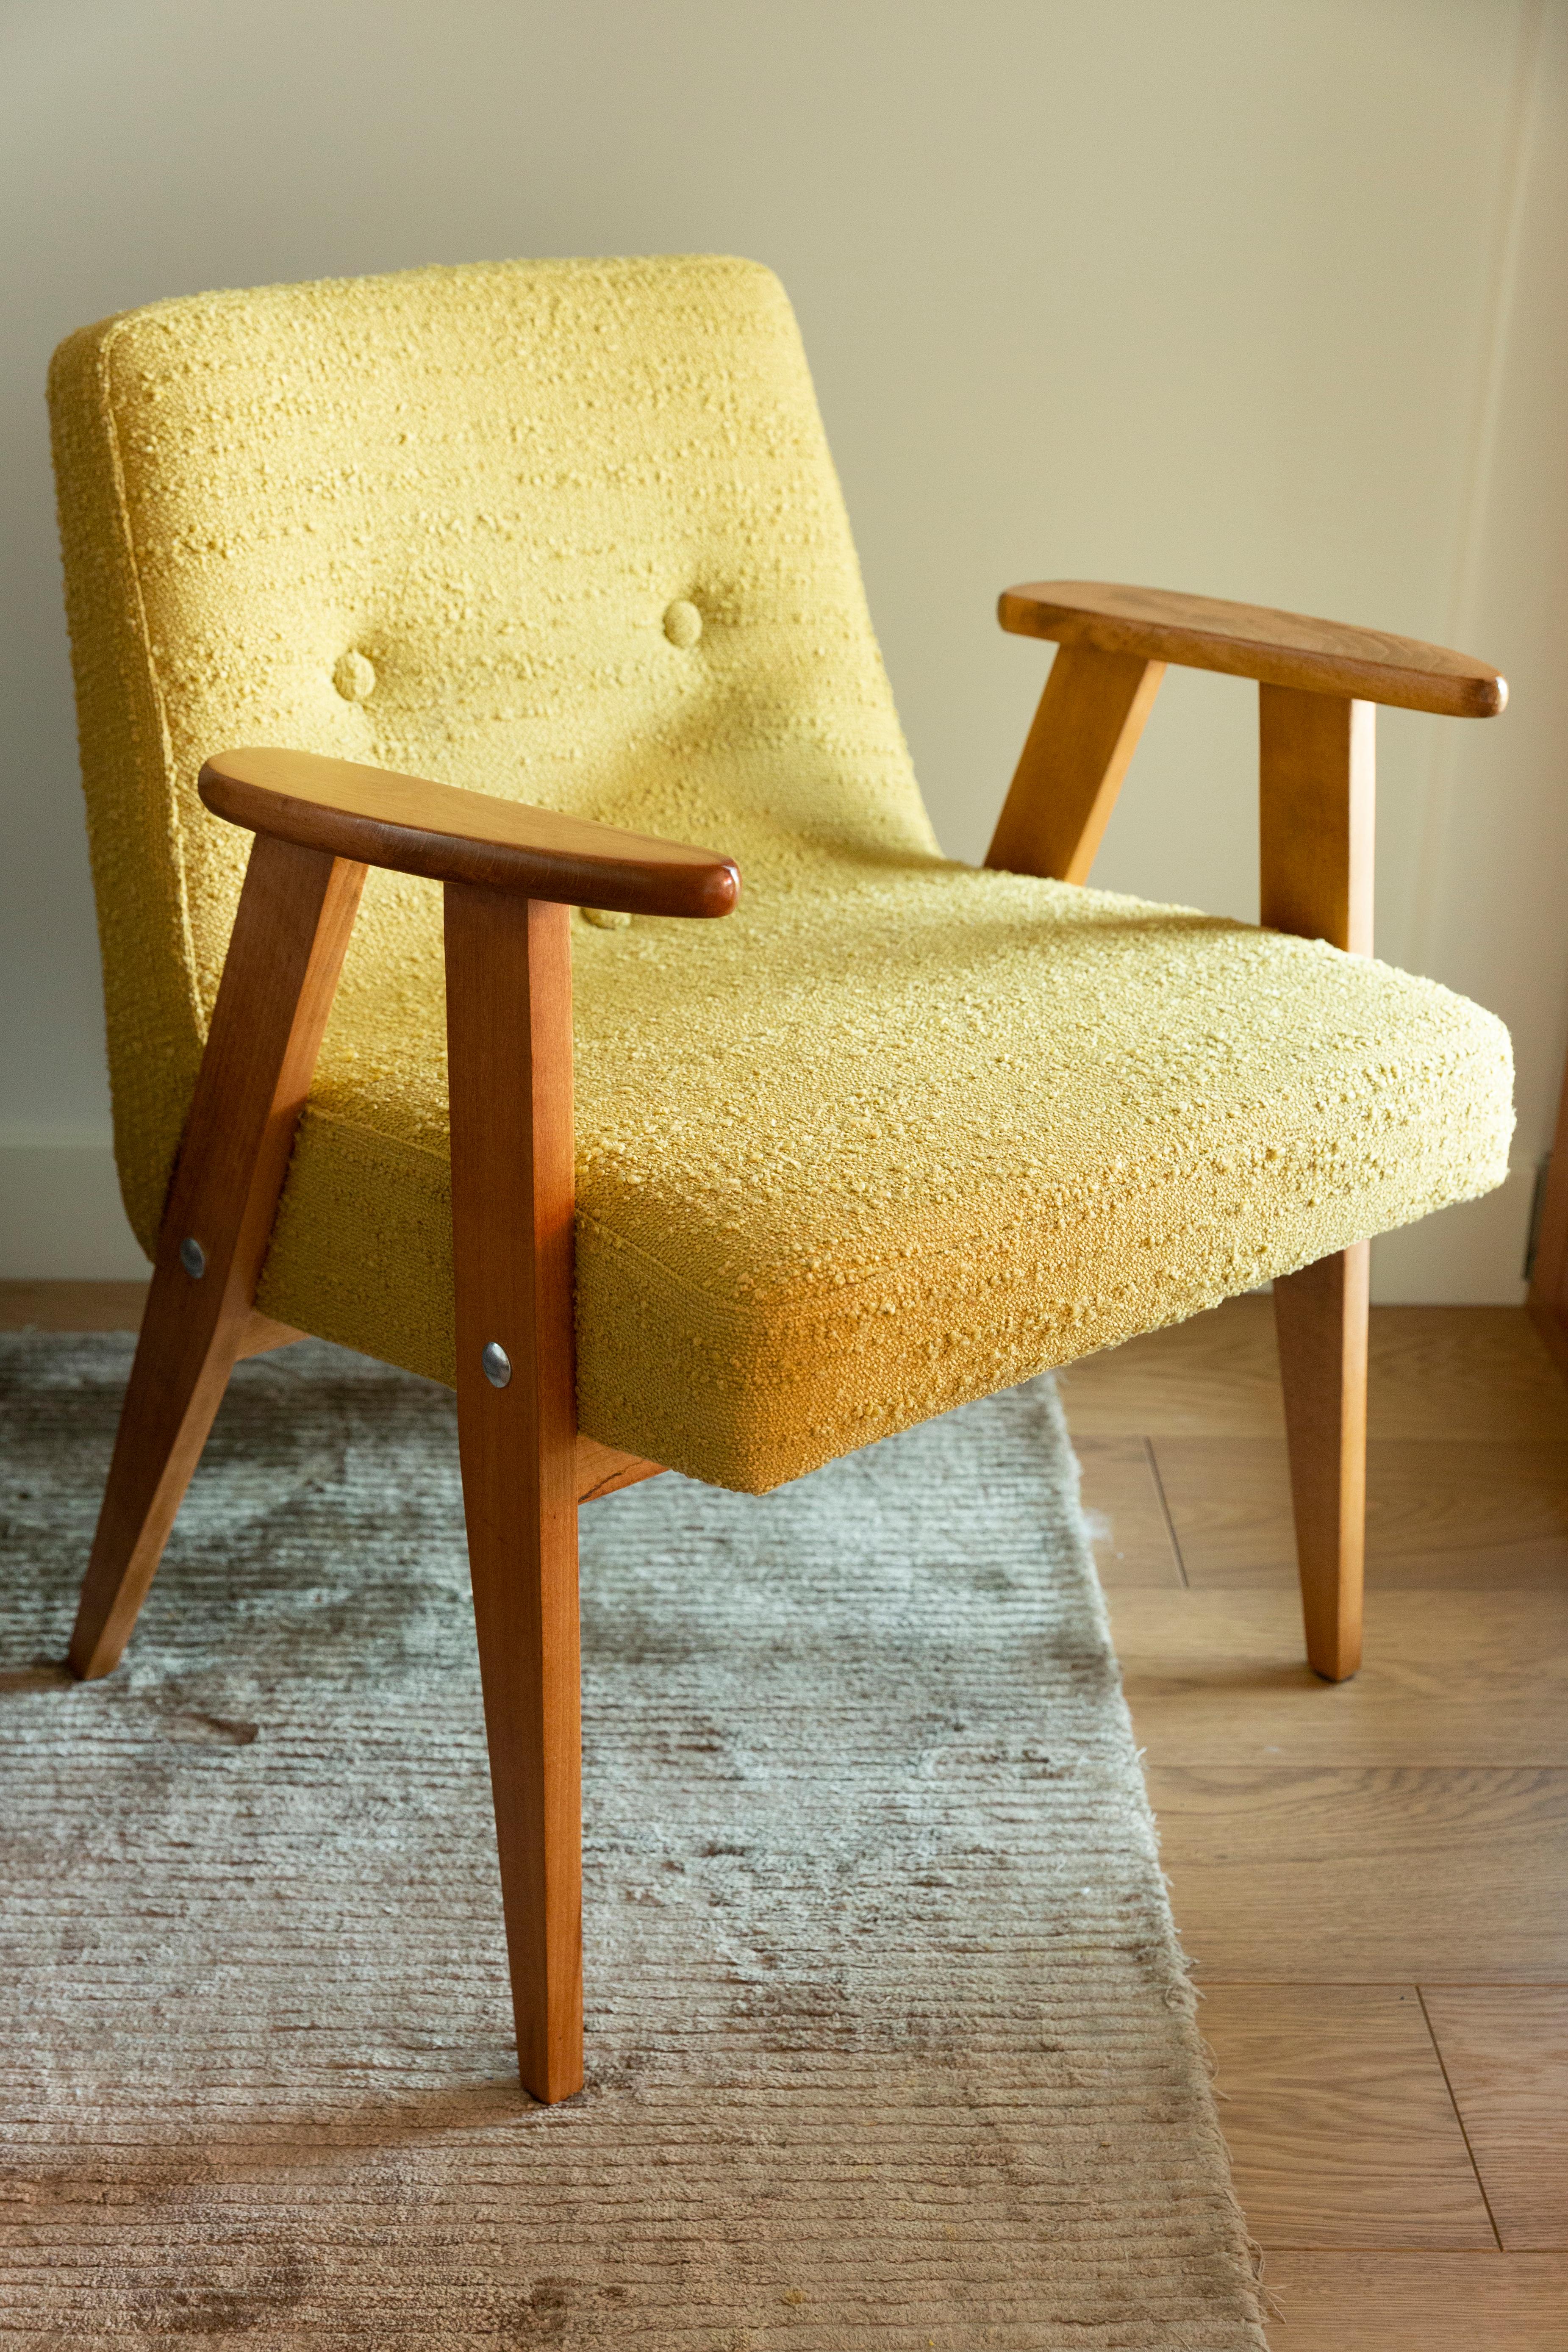 Le fauteuil 366 est une icône du design polonais de la période PRL.

Le célèbre fauteuil a été conçu en 1962 par l'architecte d'intérieur et designer de meubles polonais Jozef Marian Chierowski. Fabriqué dans l'usine de meubles de Basse-Silésie à